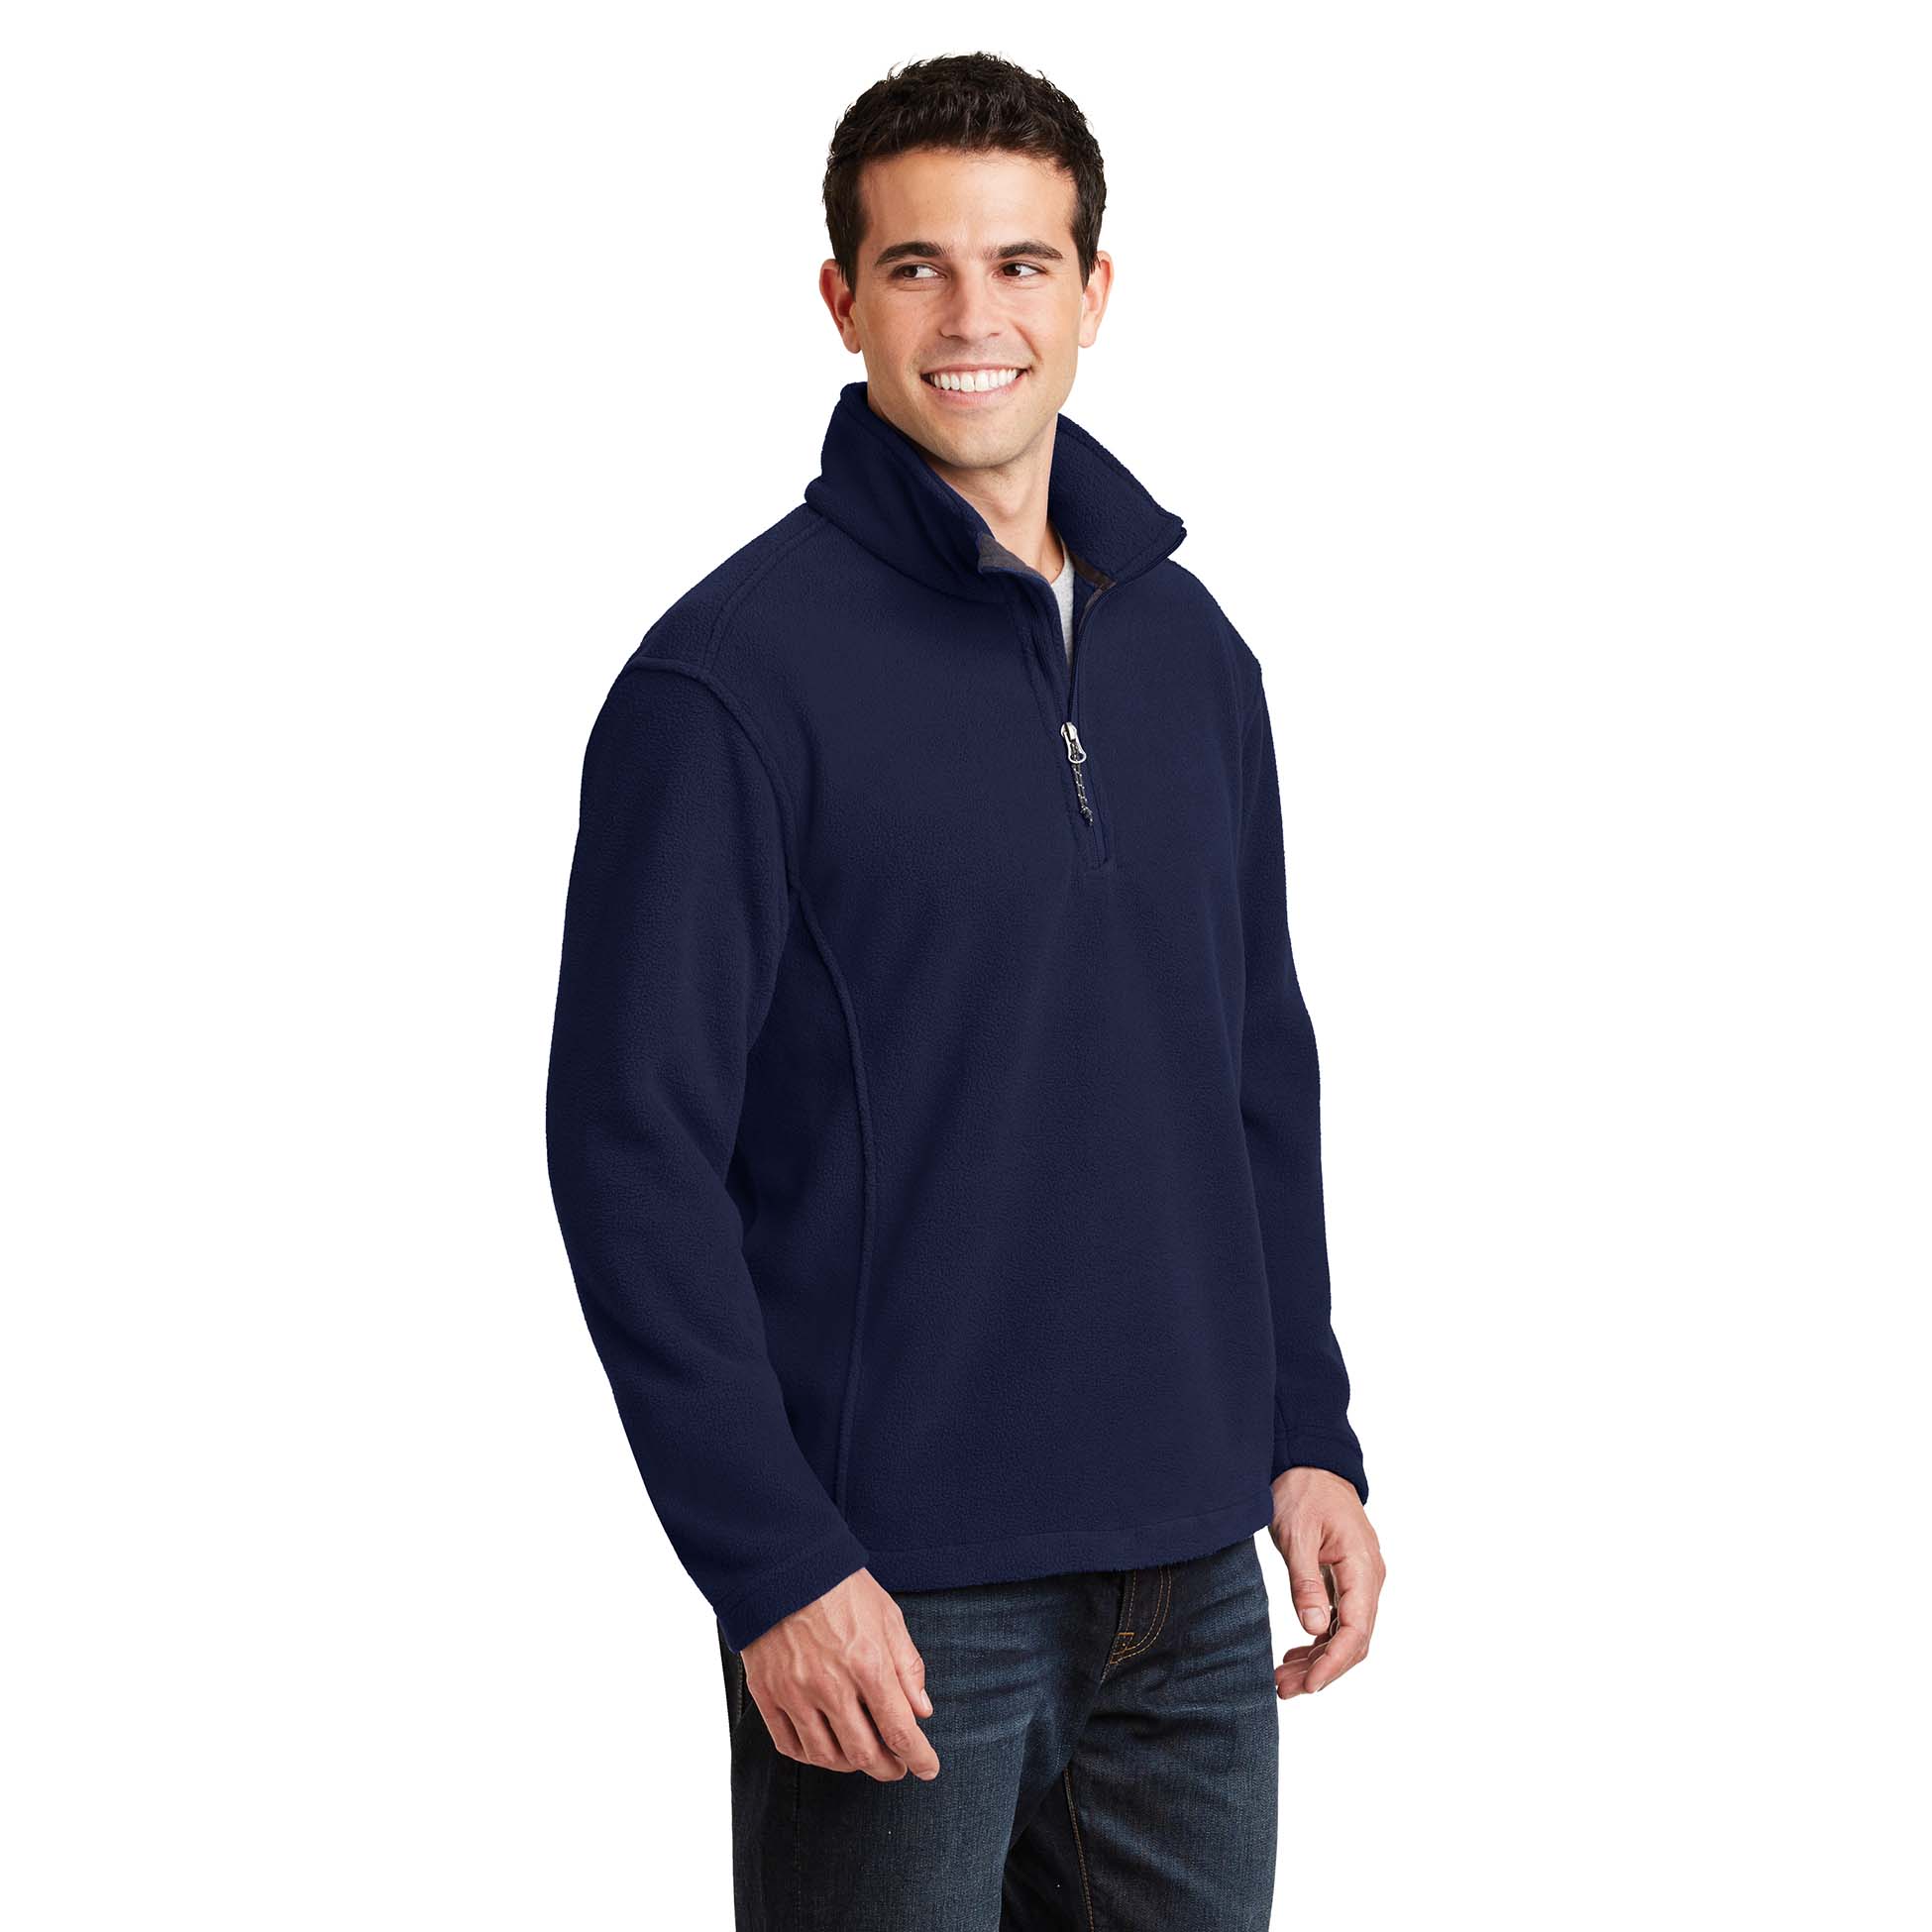 Port Authority - Value Fleece 1 4-Zip Pullover. - Black - XL